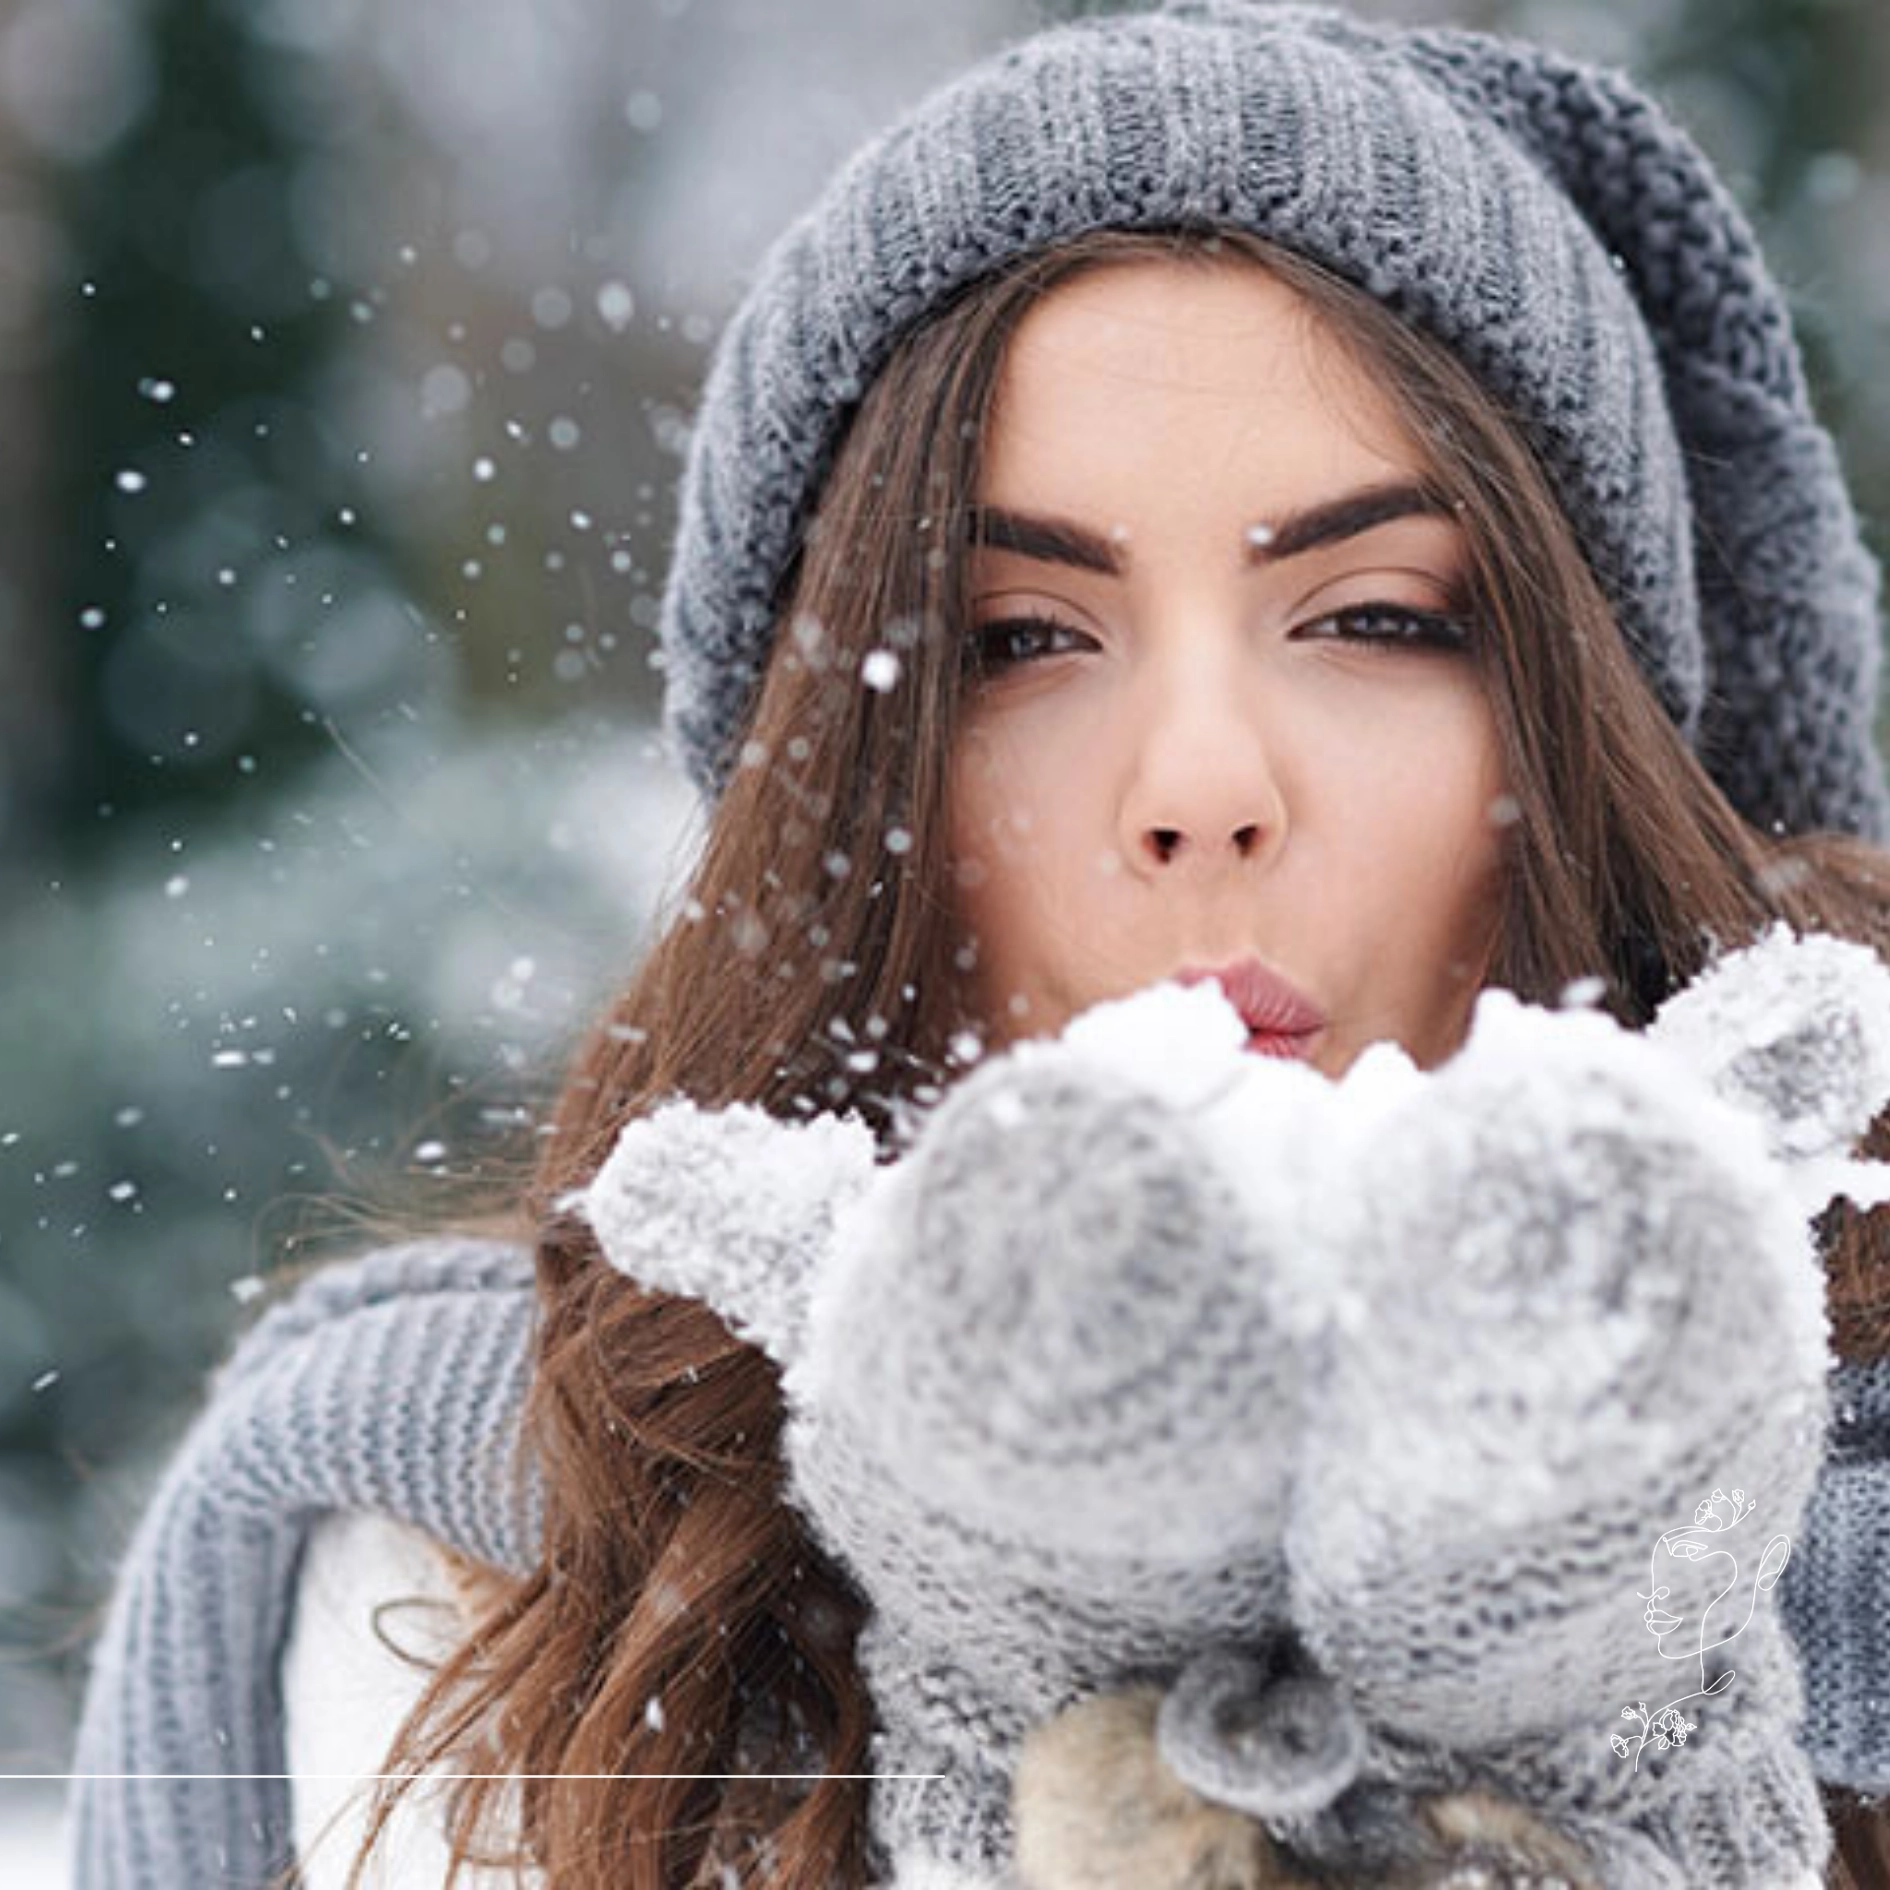 M2Med Blog - Miért a tél az ideális időszak orrplasztikára?